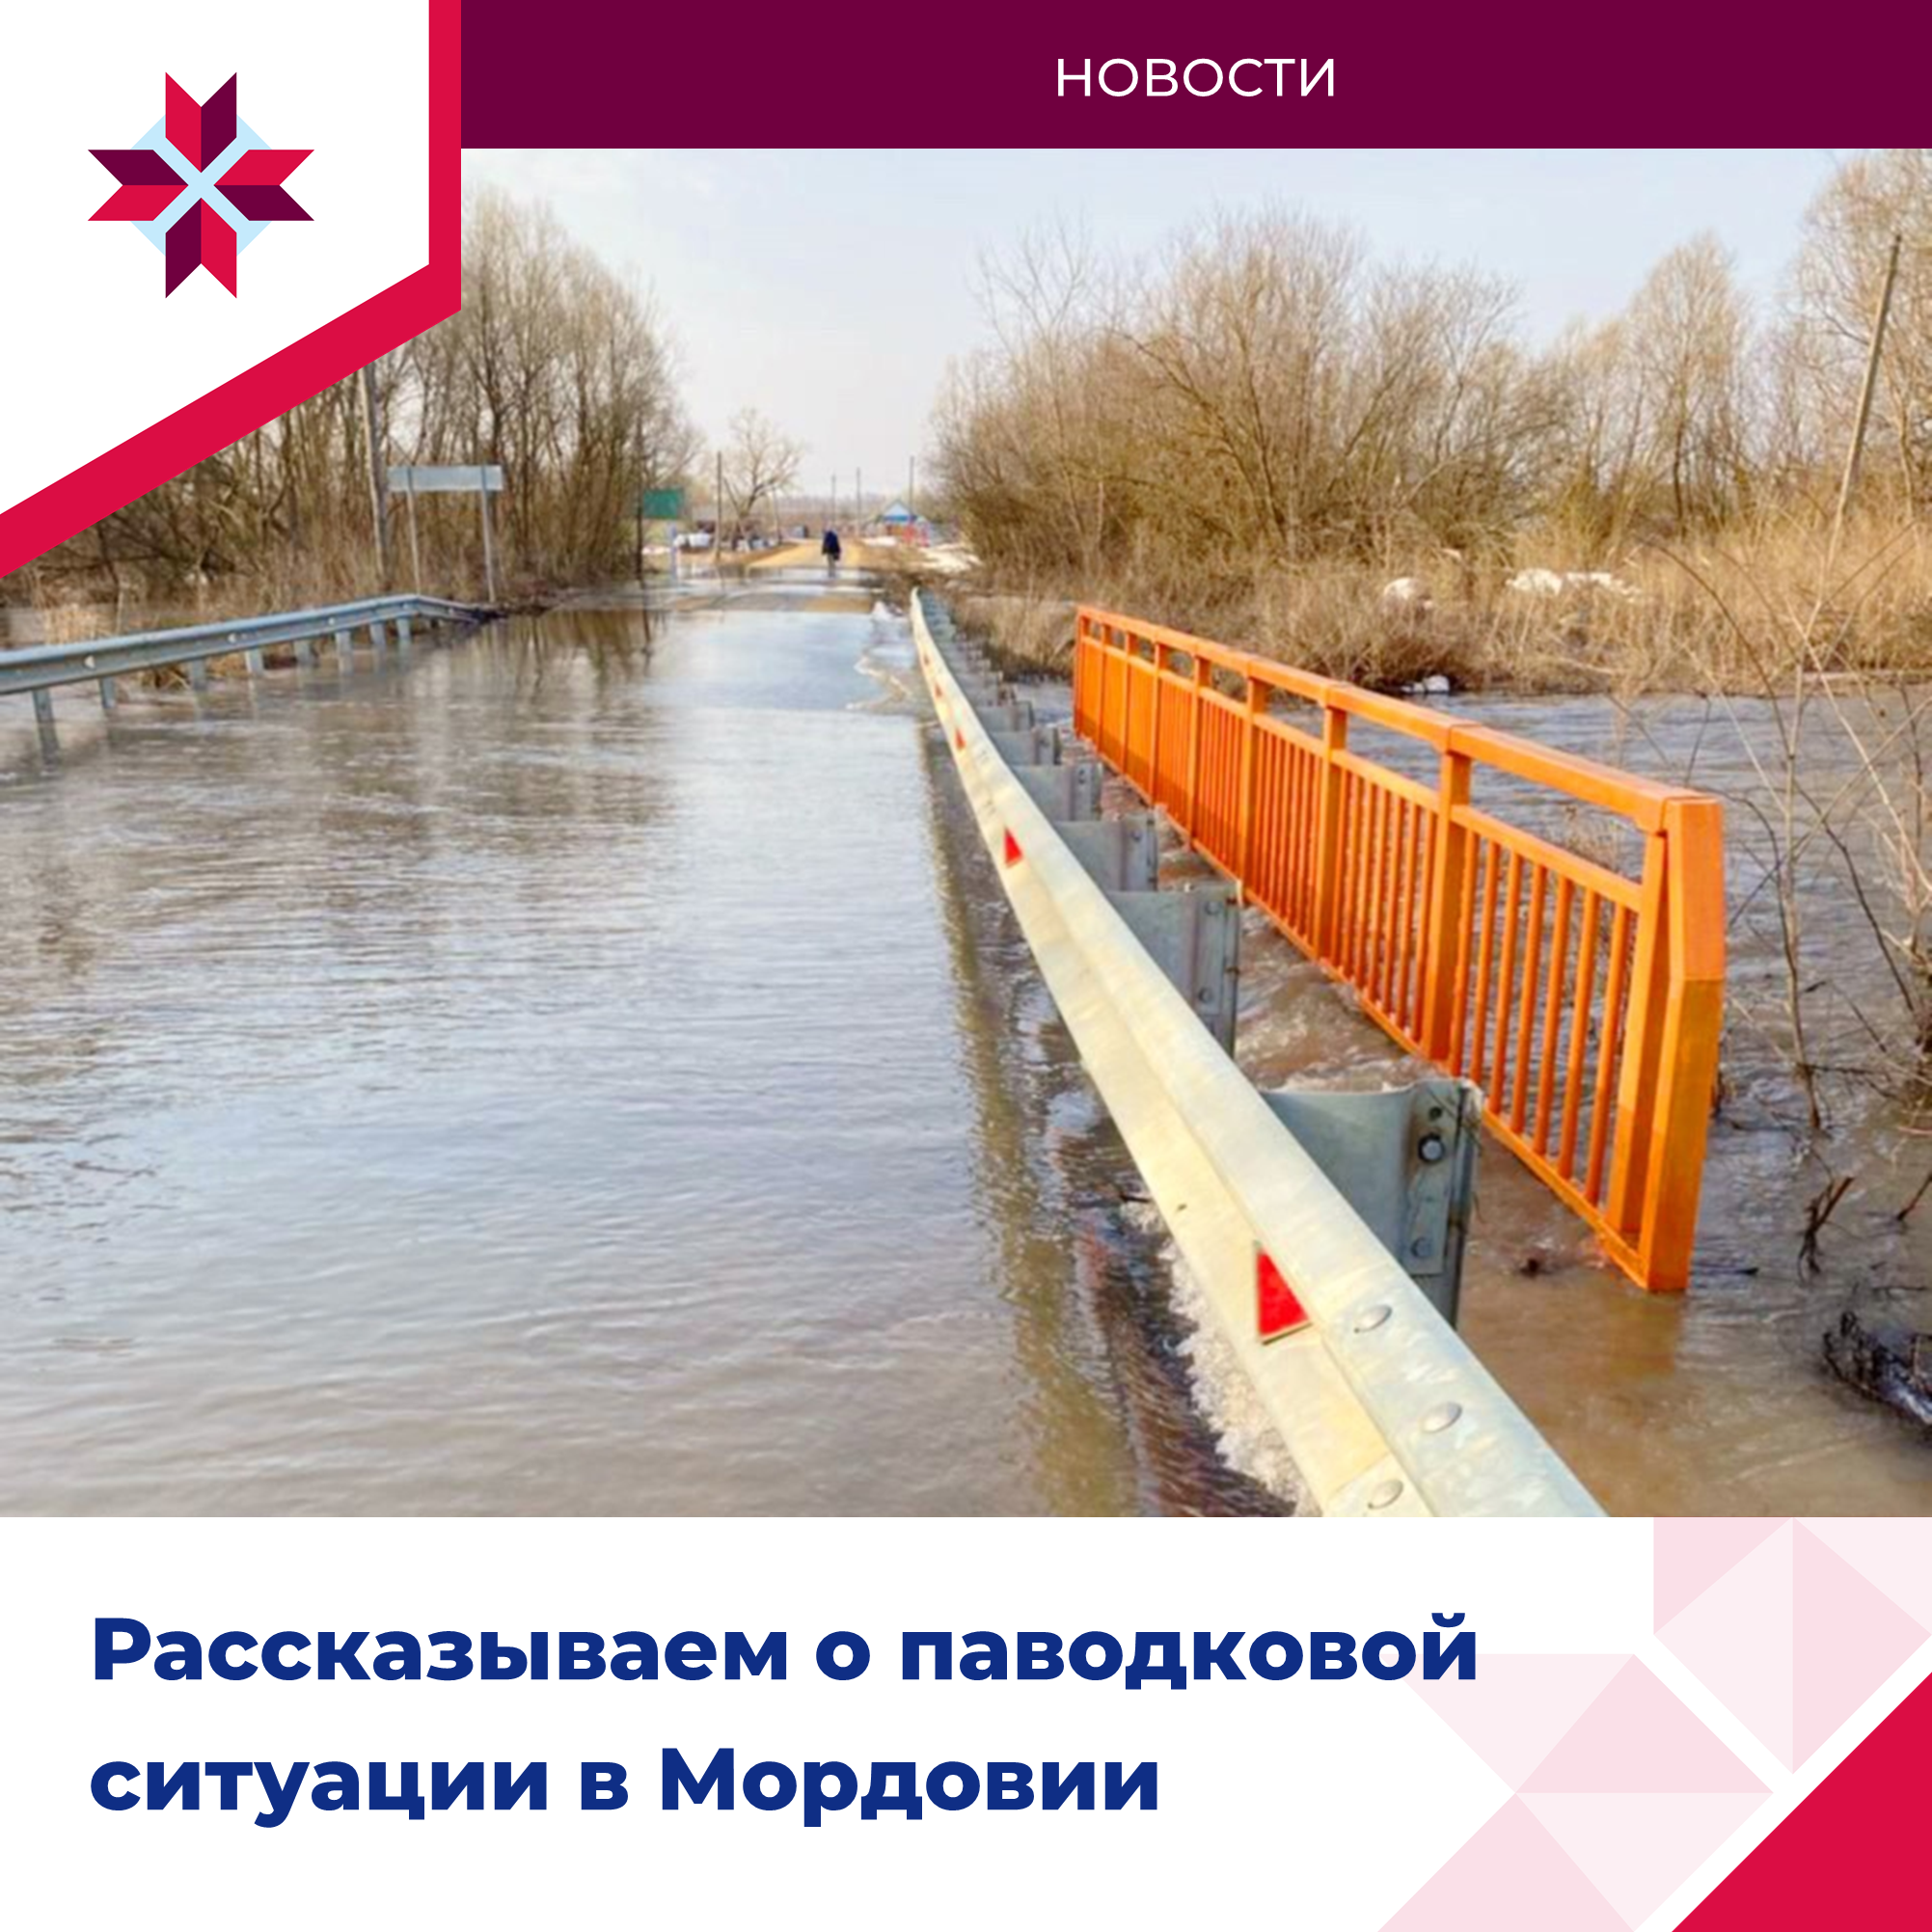 Рассказываем о паводковой ситуации в Мордовии.